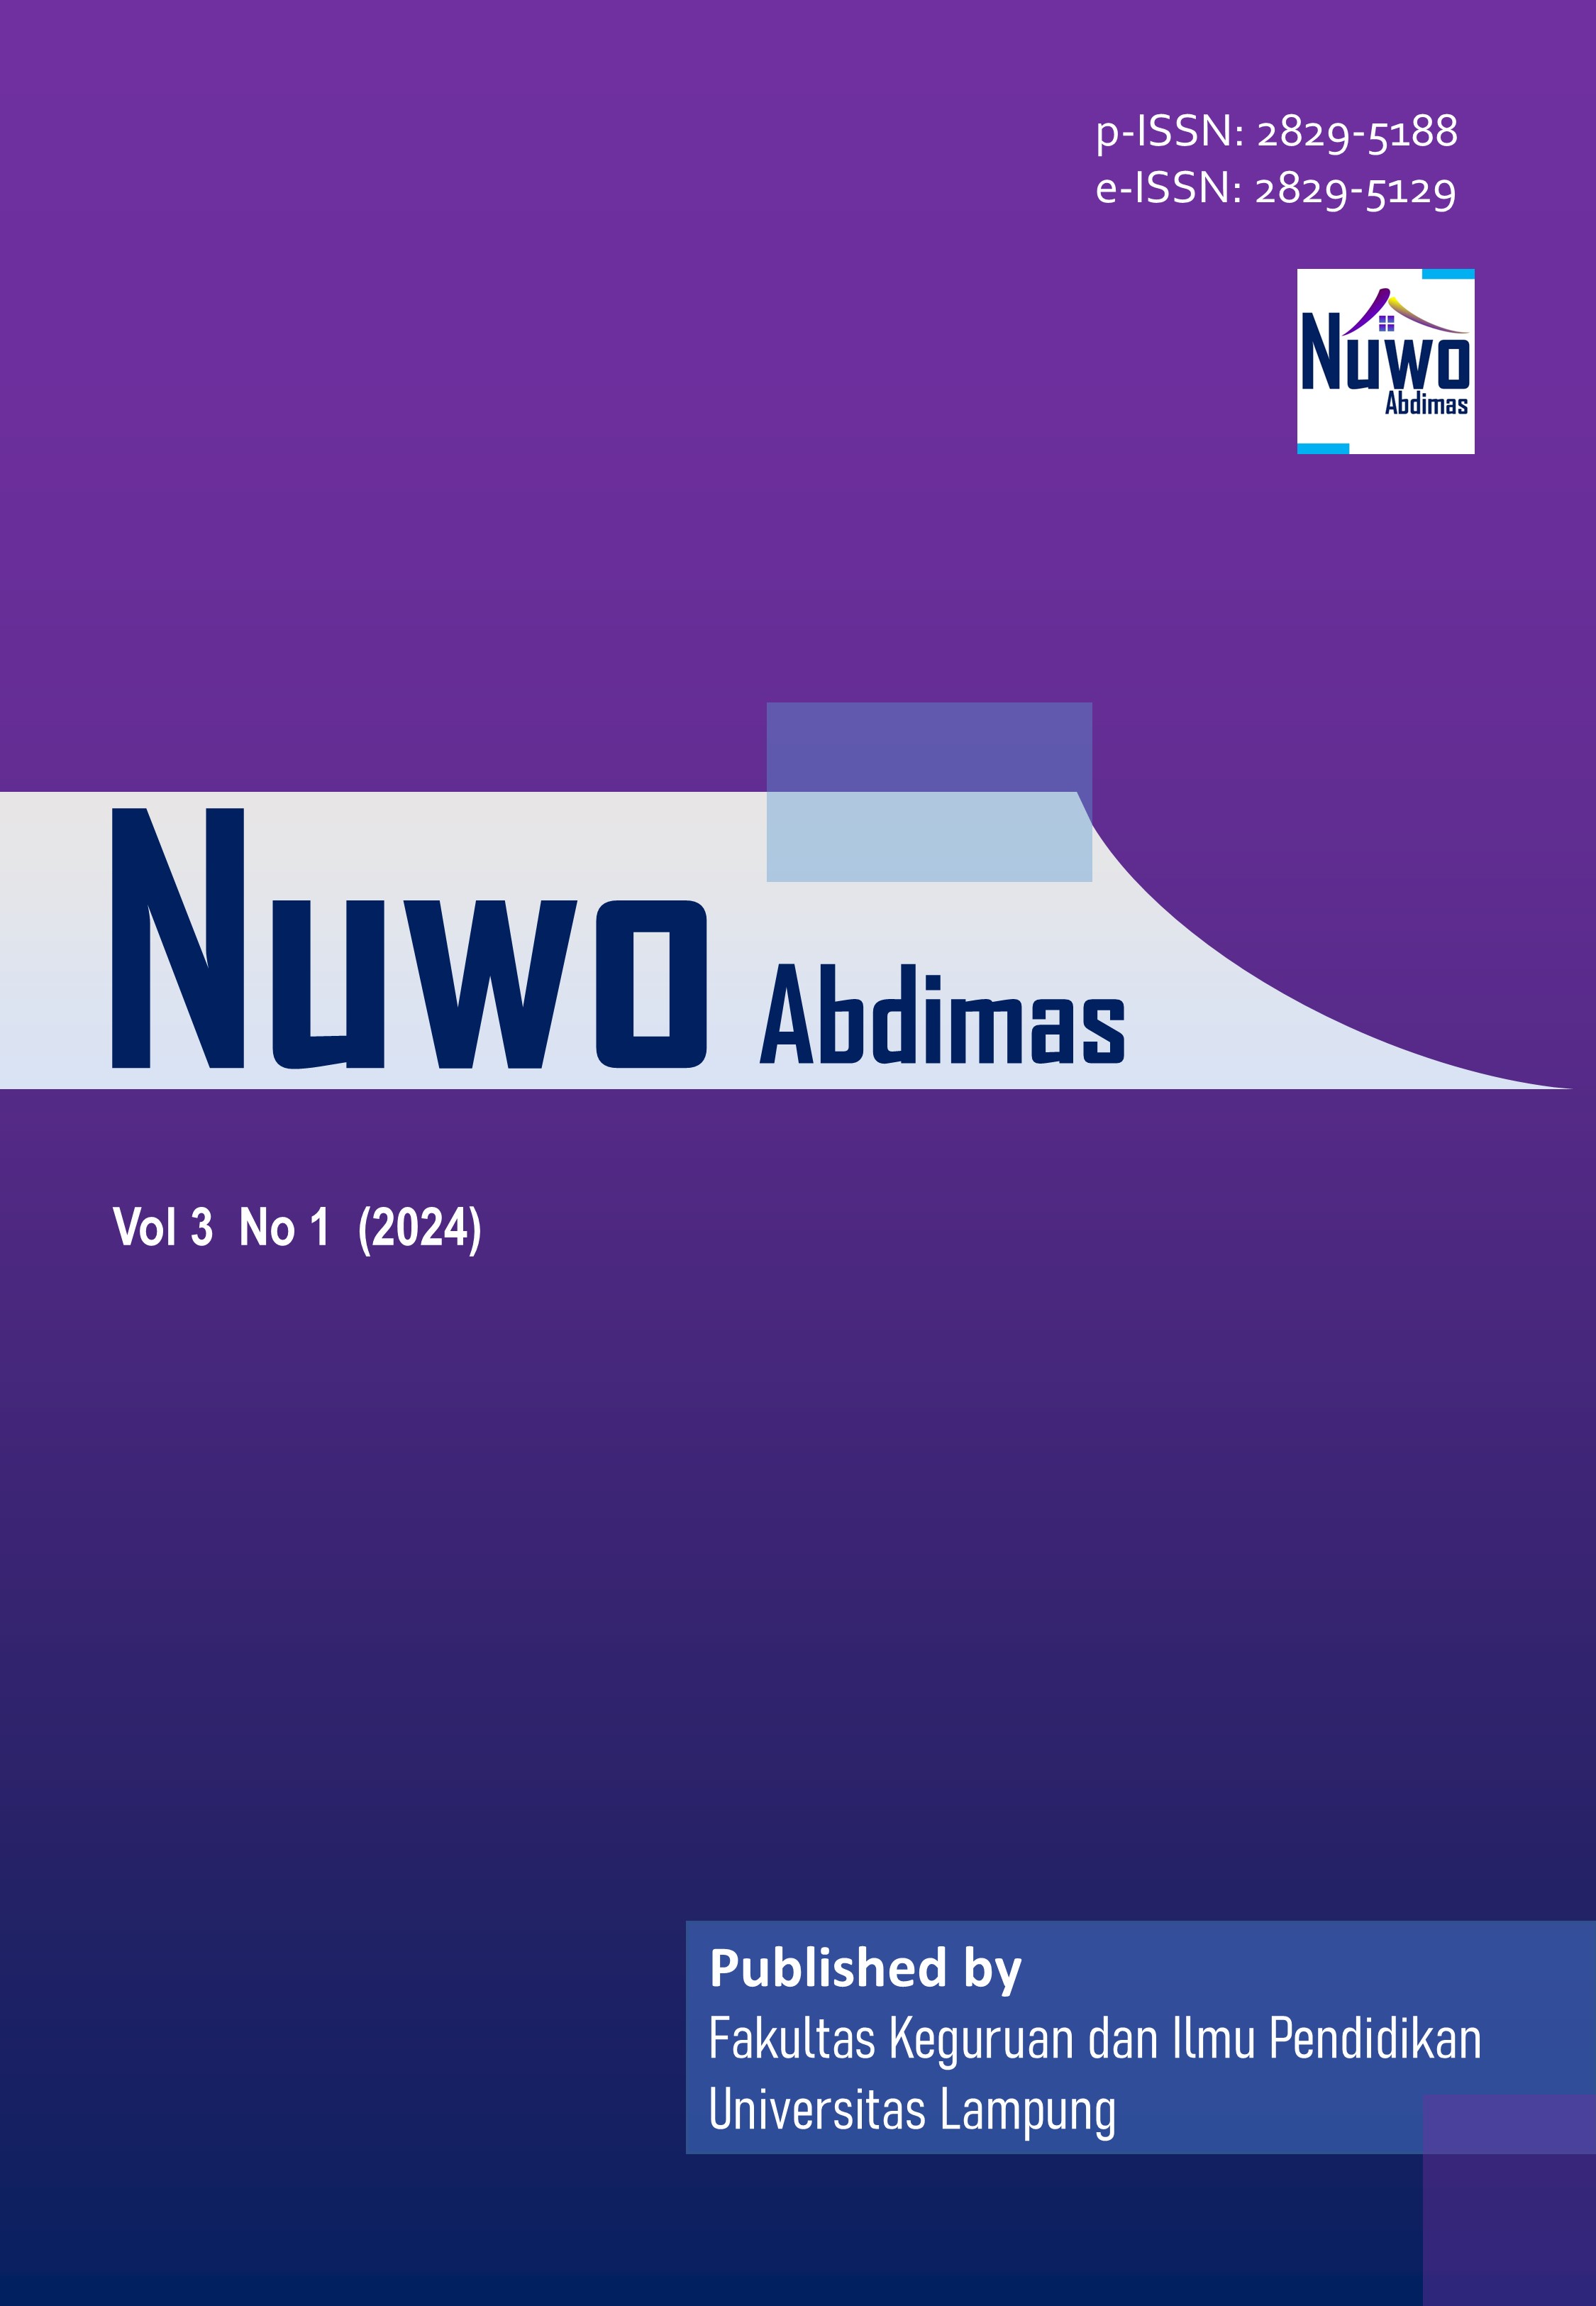 					Lihat Vol 3 No 1 (2024): Nuwo Abdimas
				